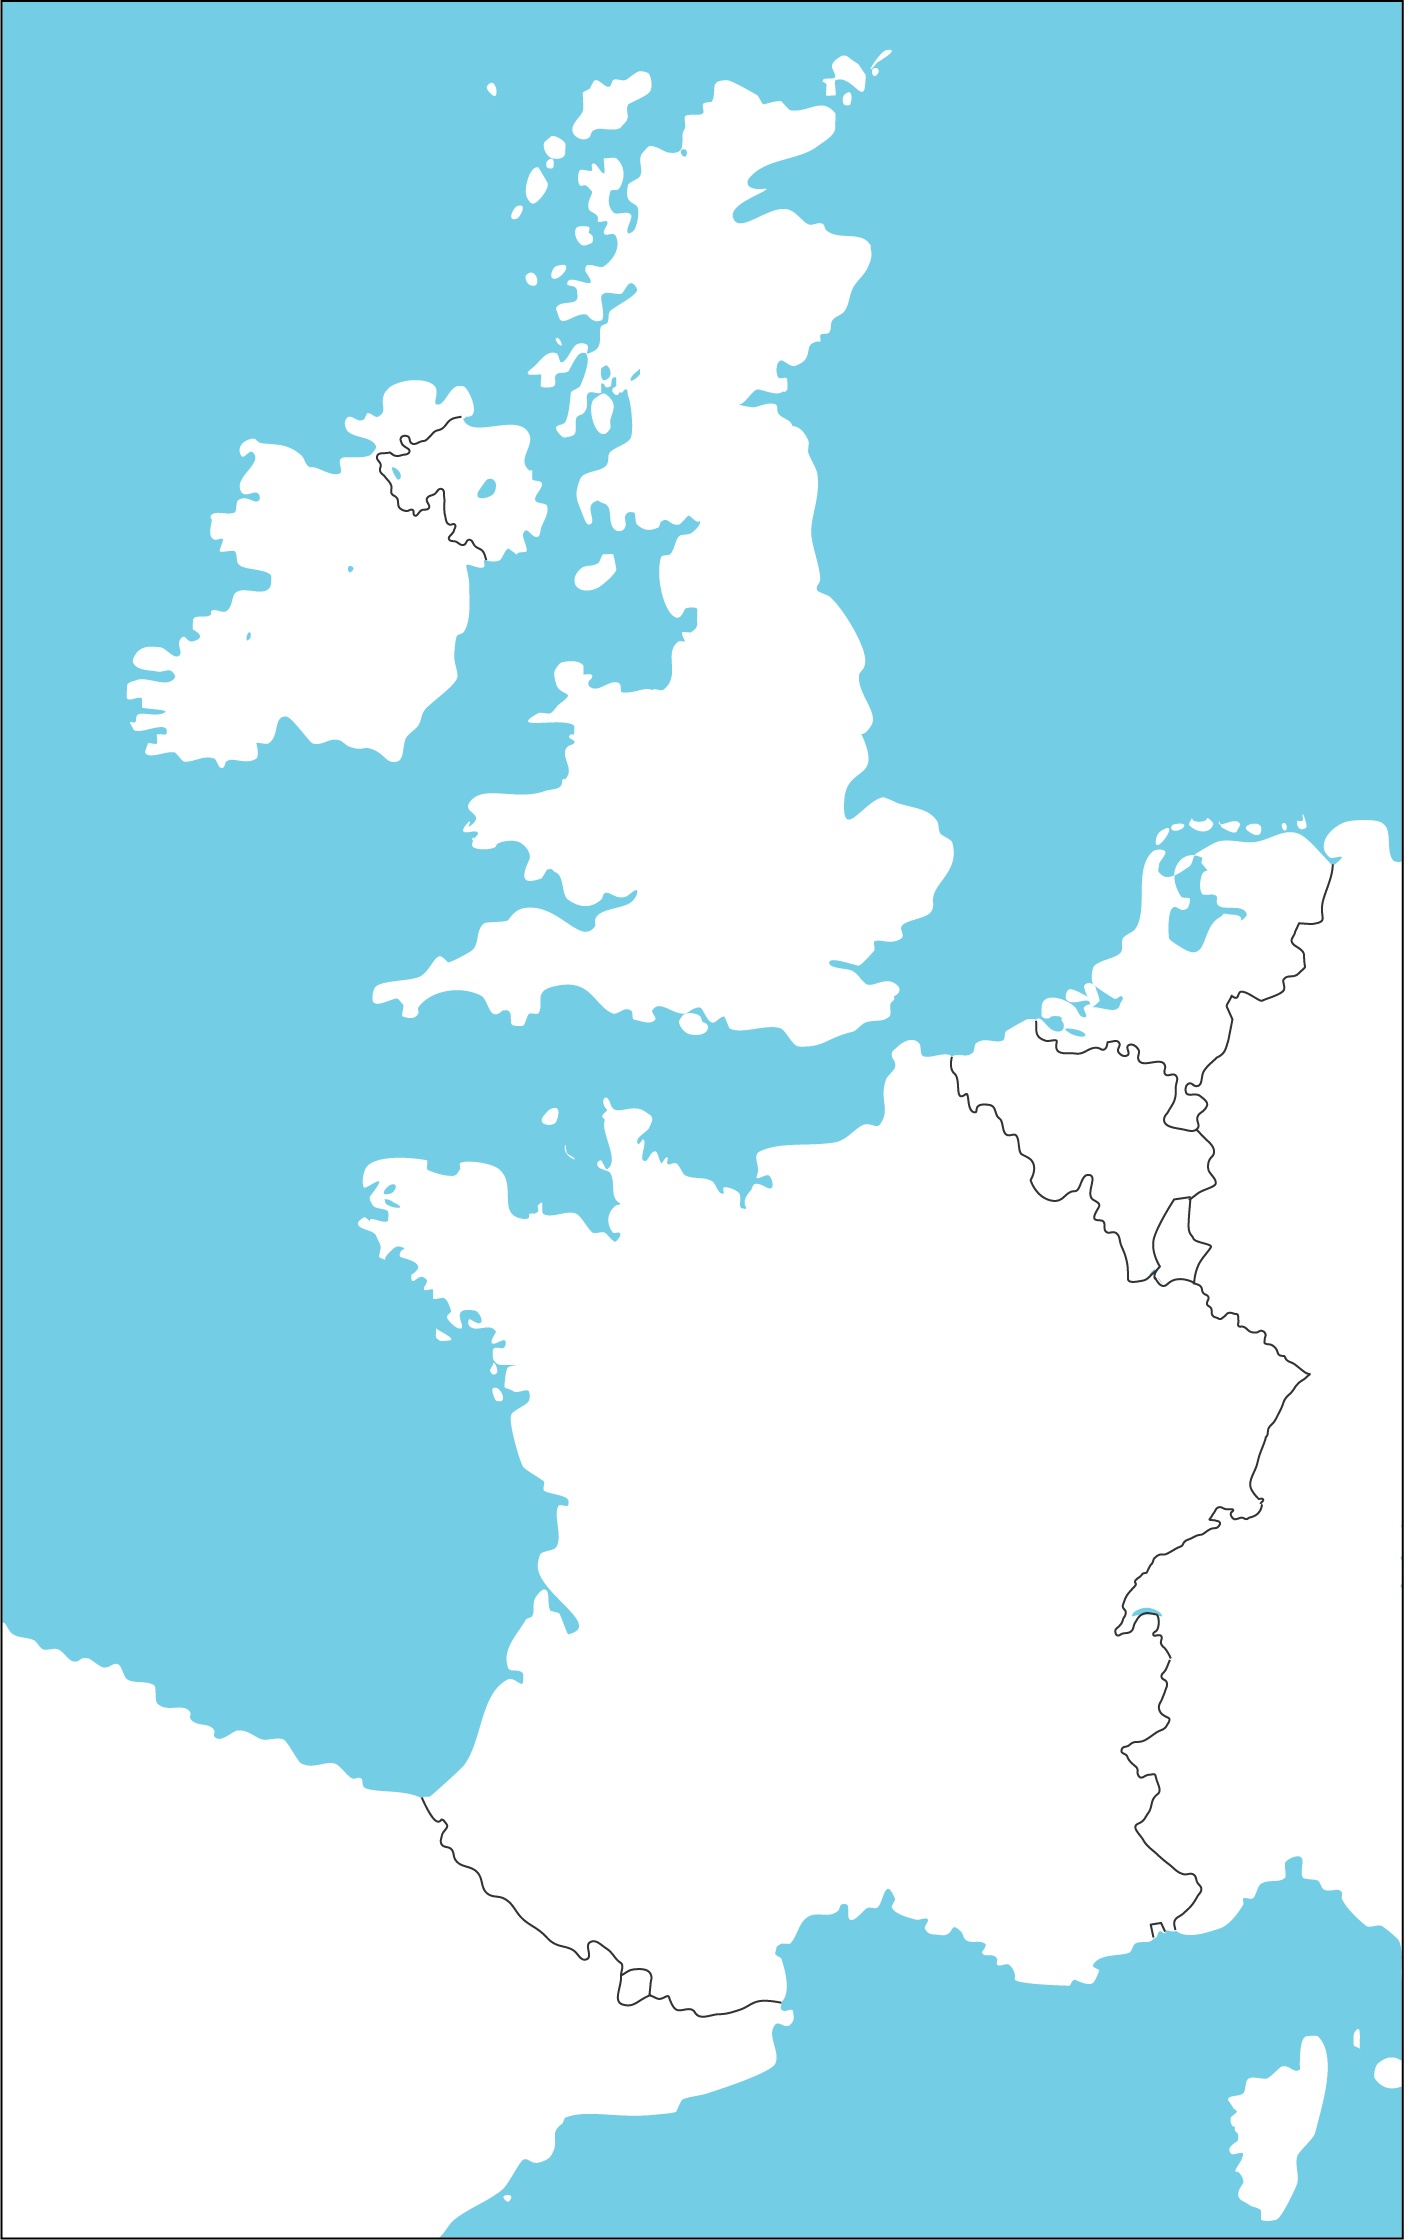 slijepa karta zapadne europe Osnovna škola Josipa Zorića Dugo Selo   Geografija slijepa karta zapadne europe